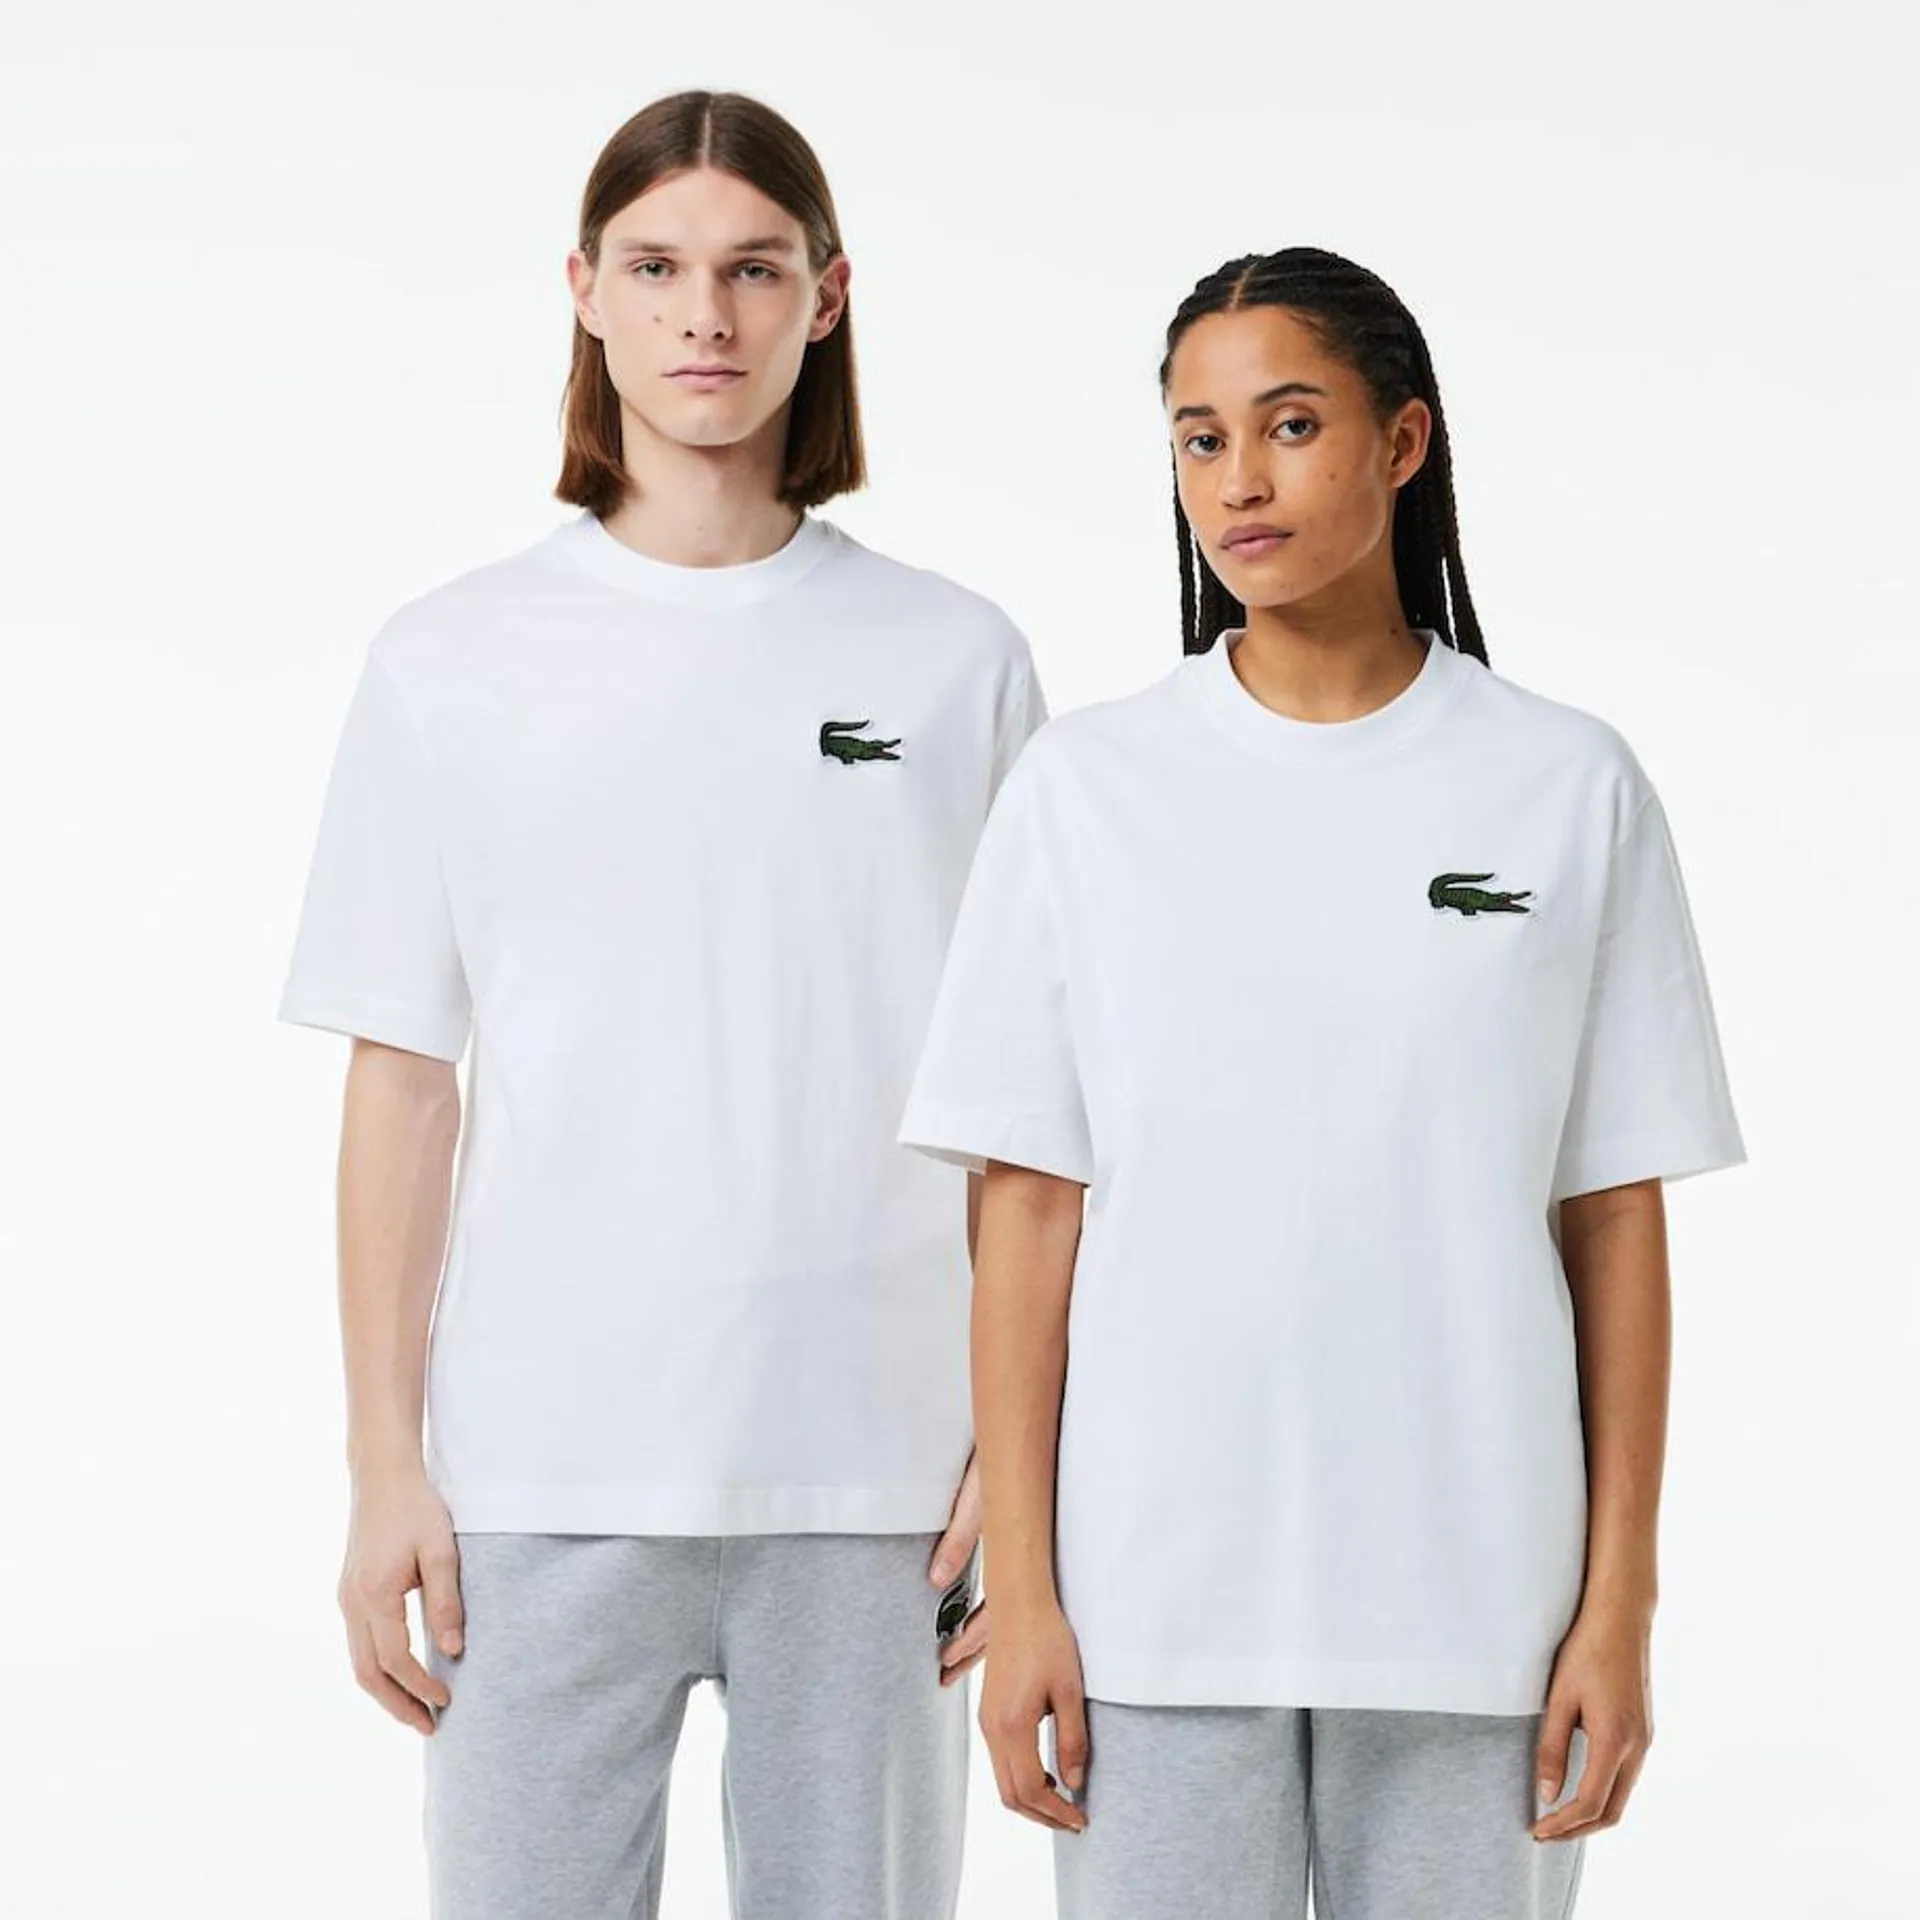 Camiseta unisex loose fit en algodón ecológico con cocodrilo de gran tamaño